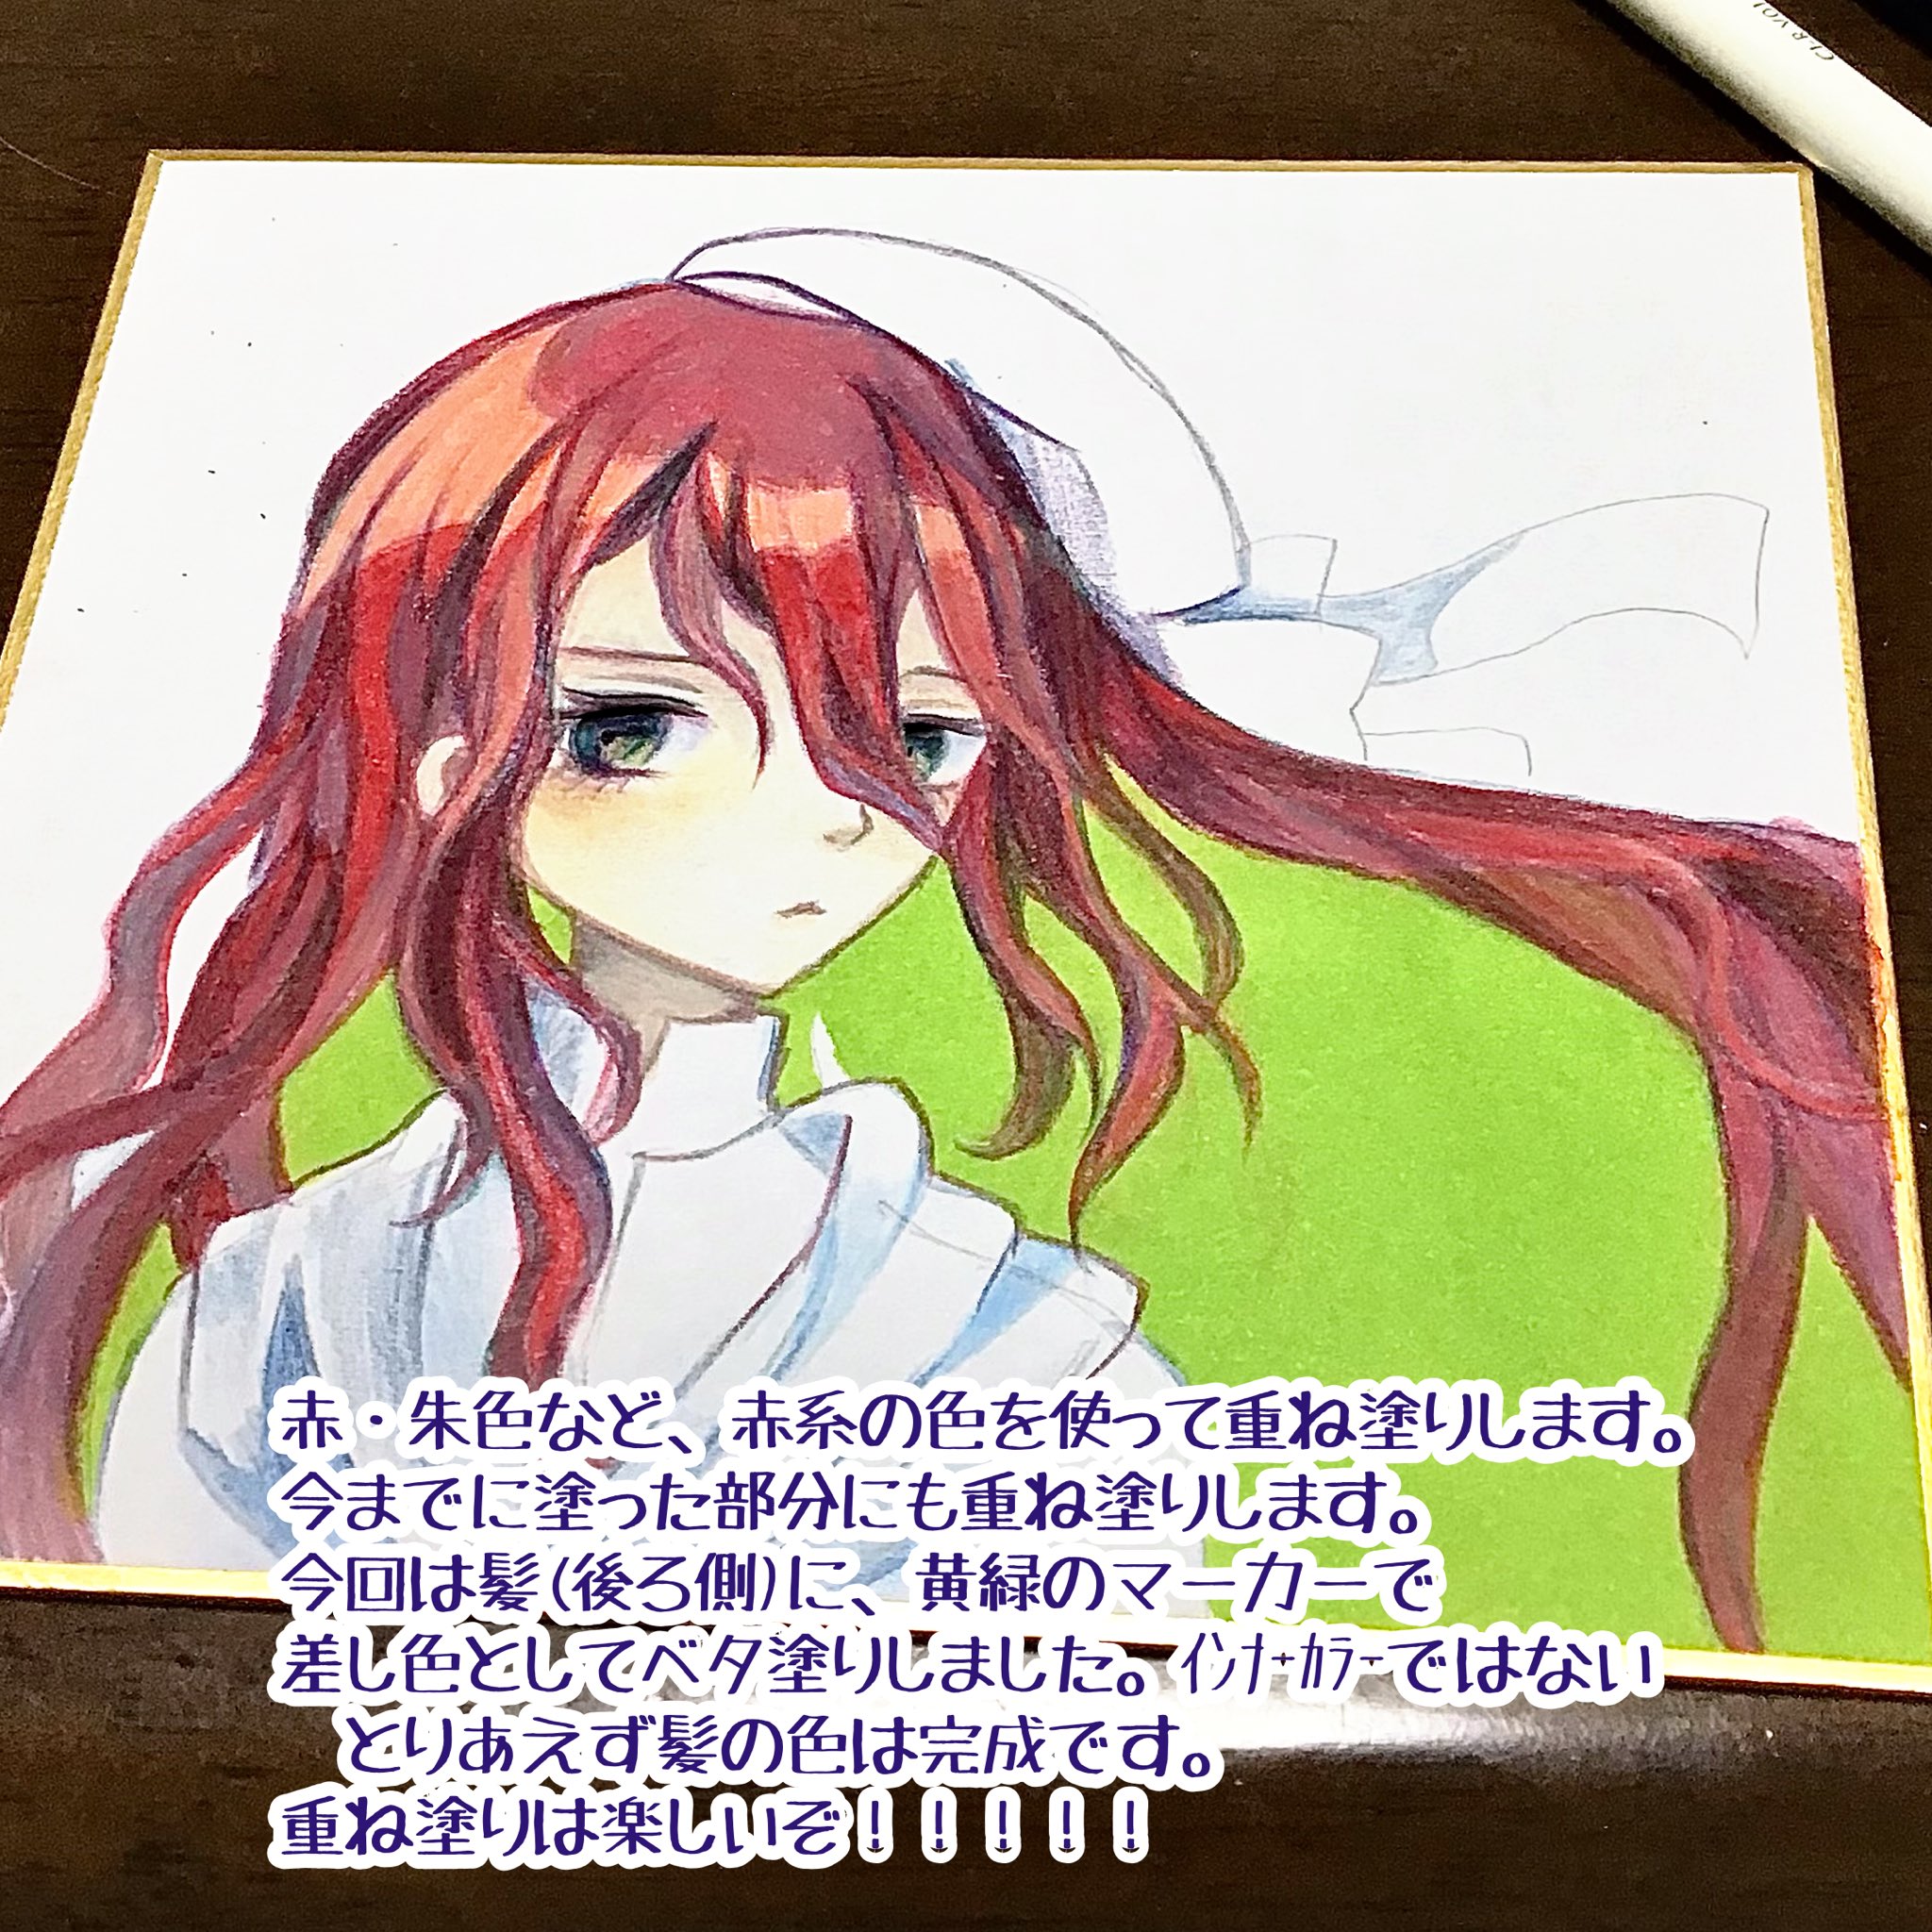 皆見 成海 ハコのナカ 展8月日 9月2日 色鉛筆で赤い髪を塗る工程をメモがてら載せてみます 色鉛筆 イラスト メイキング T Co Odxdpjb9d6 Twitter